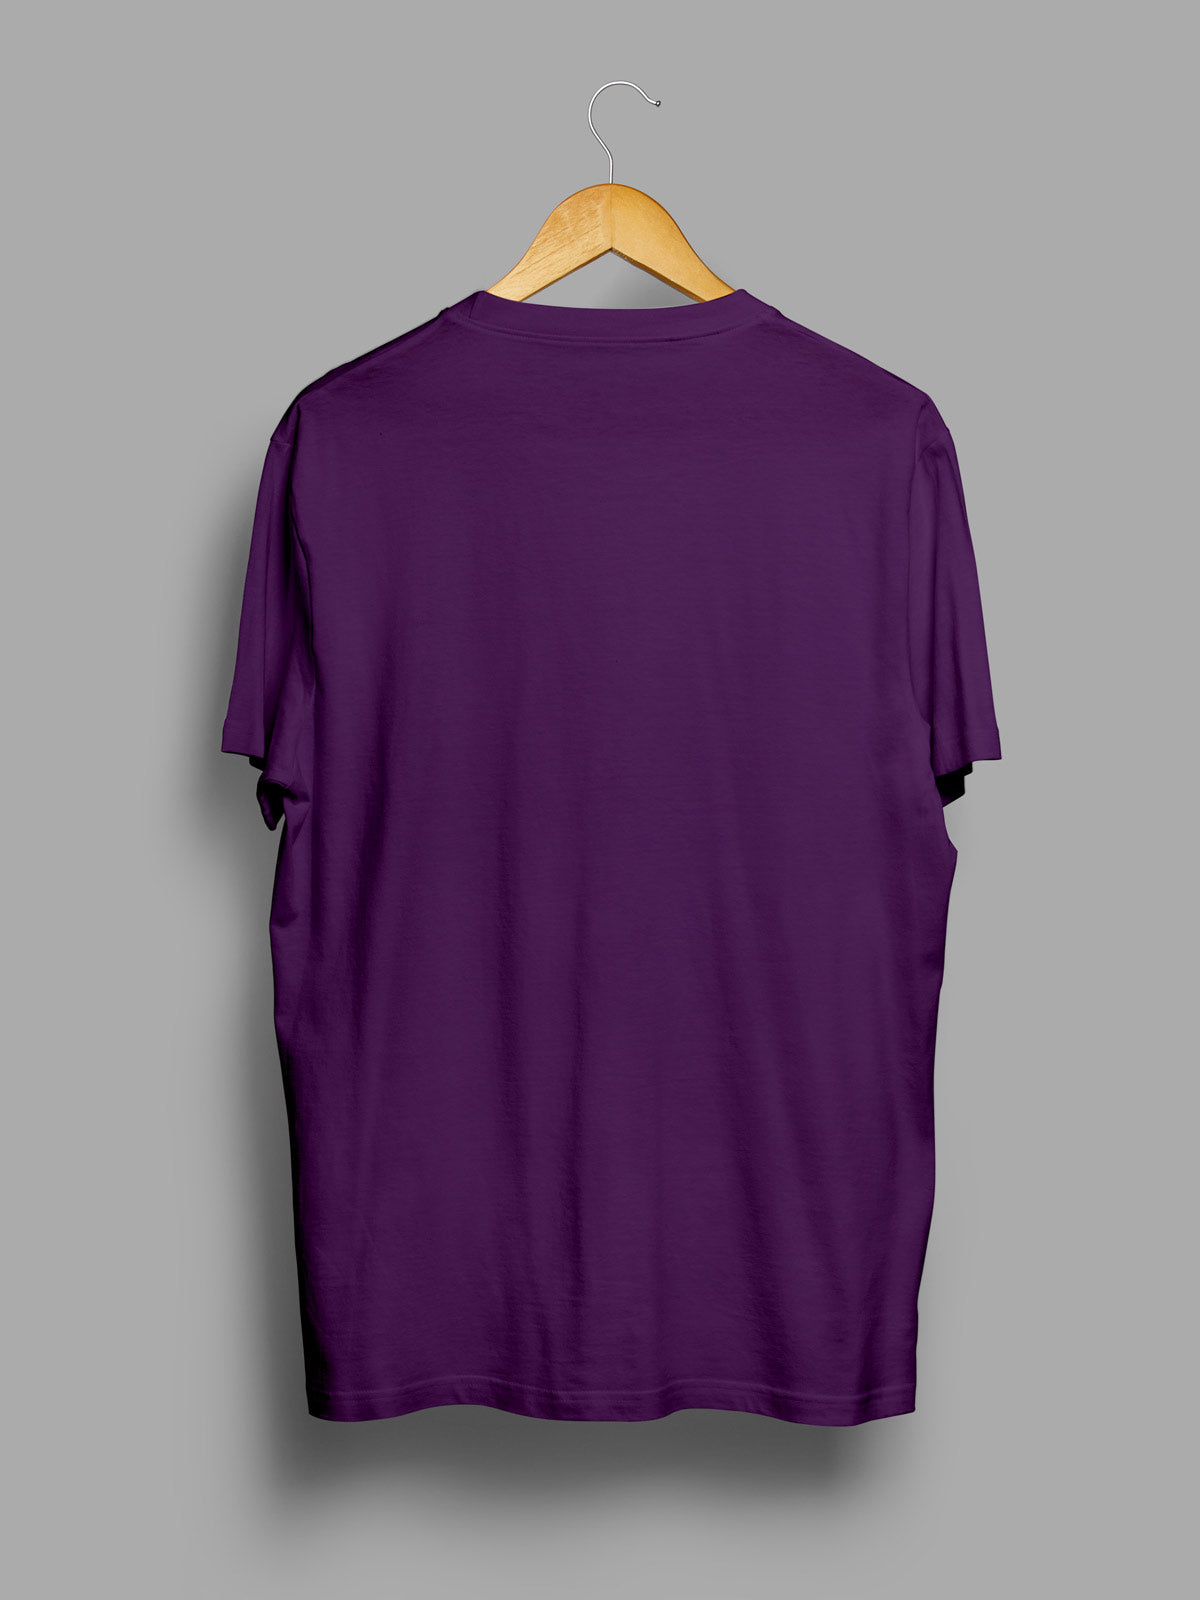 Deep-purple-t-shirt-for-men by Ghumakkad